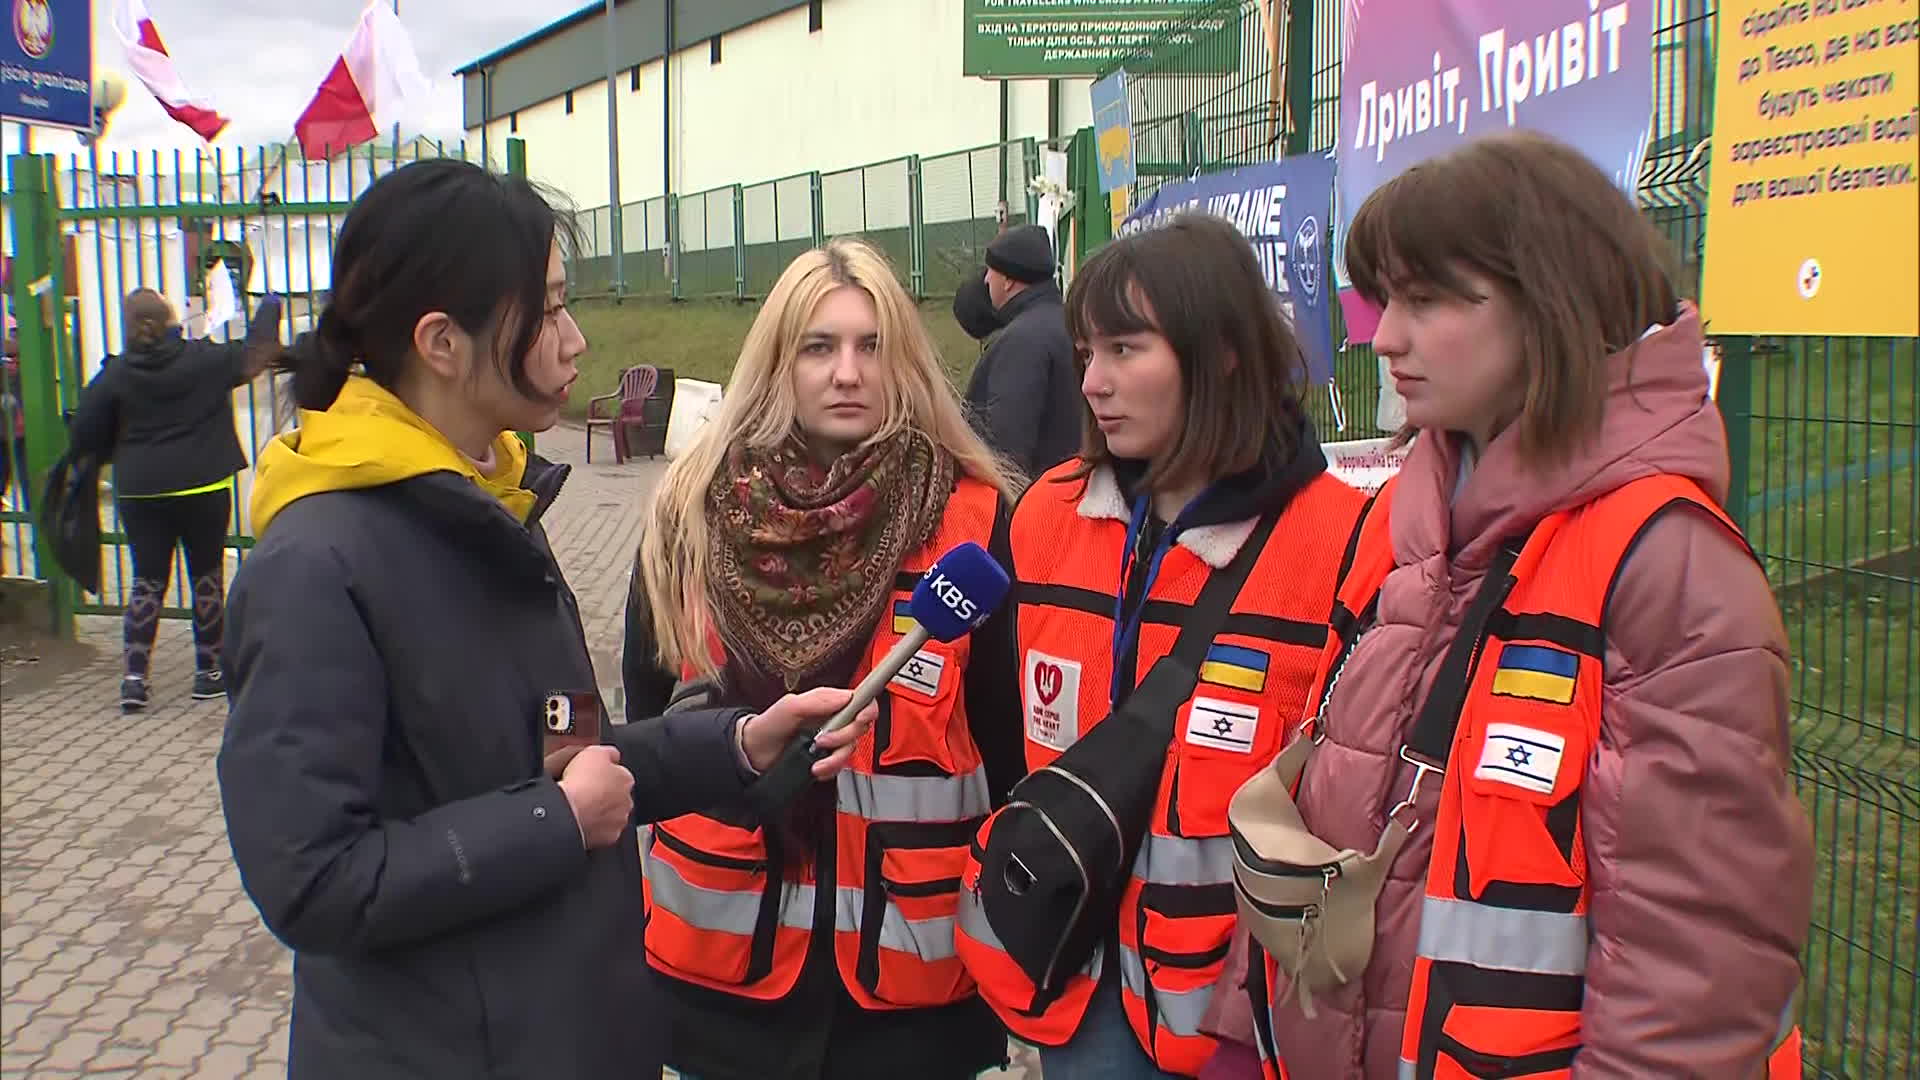 우크라이나인 자원봉사자들. 왼쪽부터 20살 이반카 카메츠카, 20살 올렉산드라 바사라브, 19살 마리아나 바흐다이.